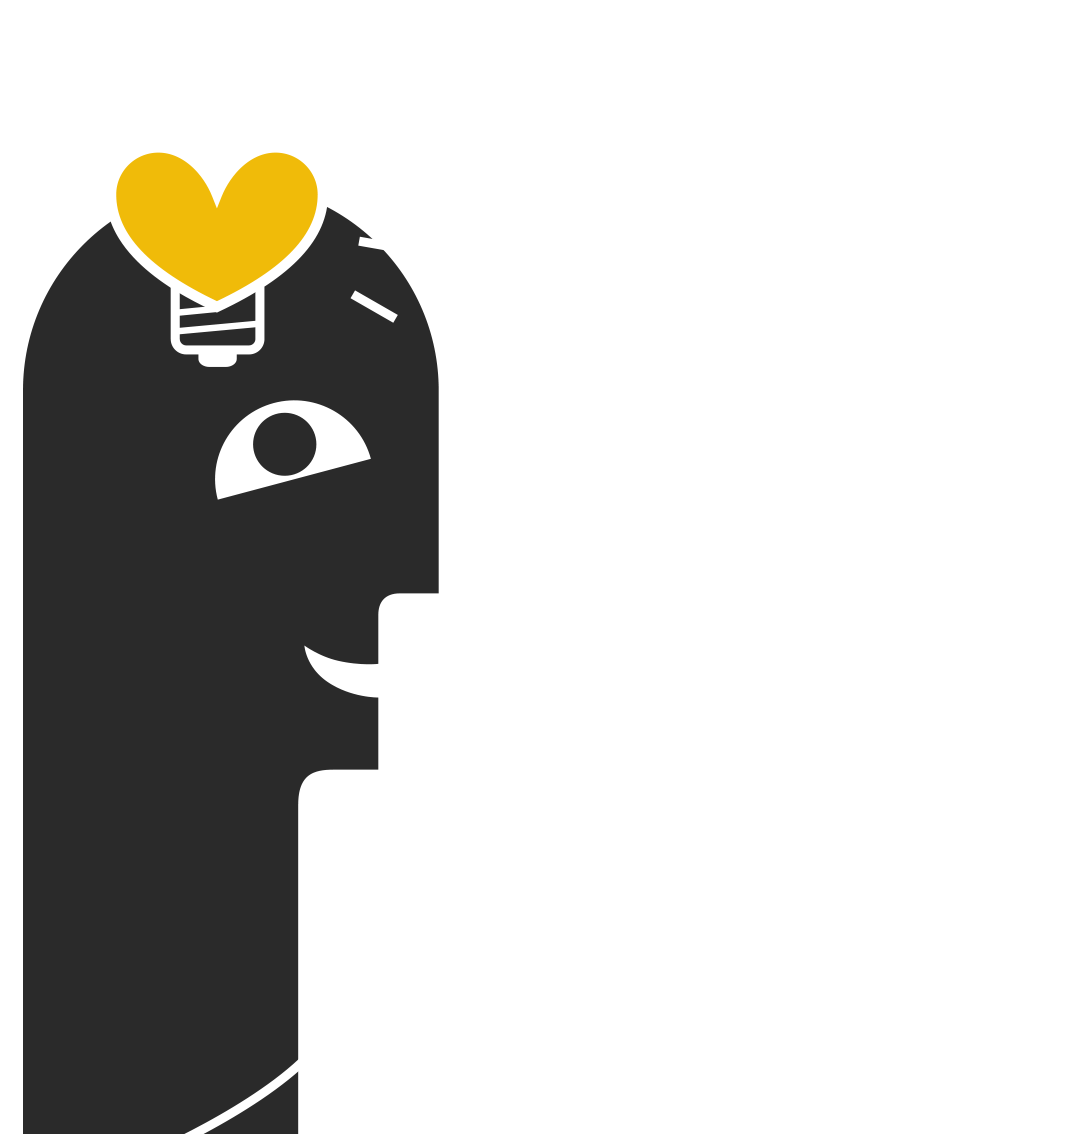 Illustriertes Männchen mit Stiften und WLan-Maus, auf dem Kopf ein Herz als Glühbirne